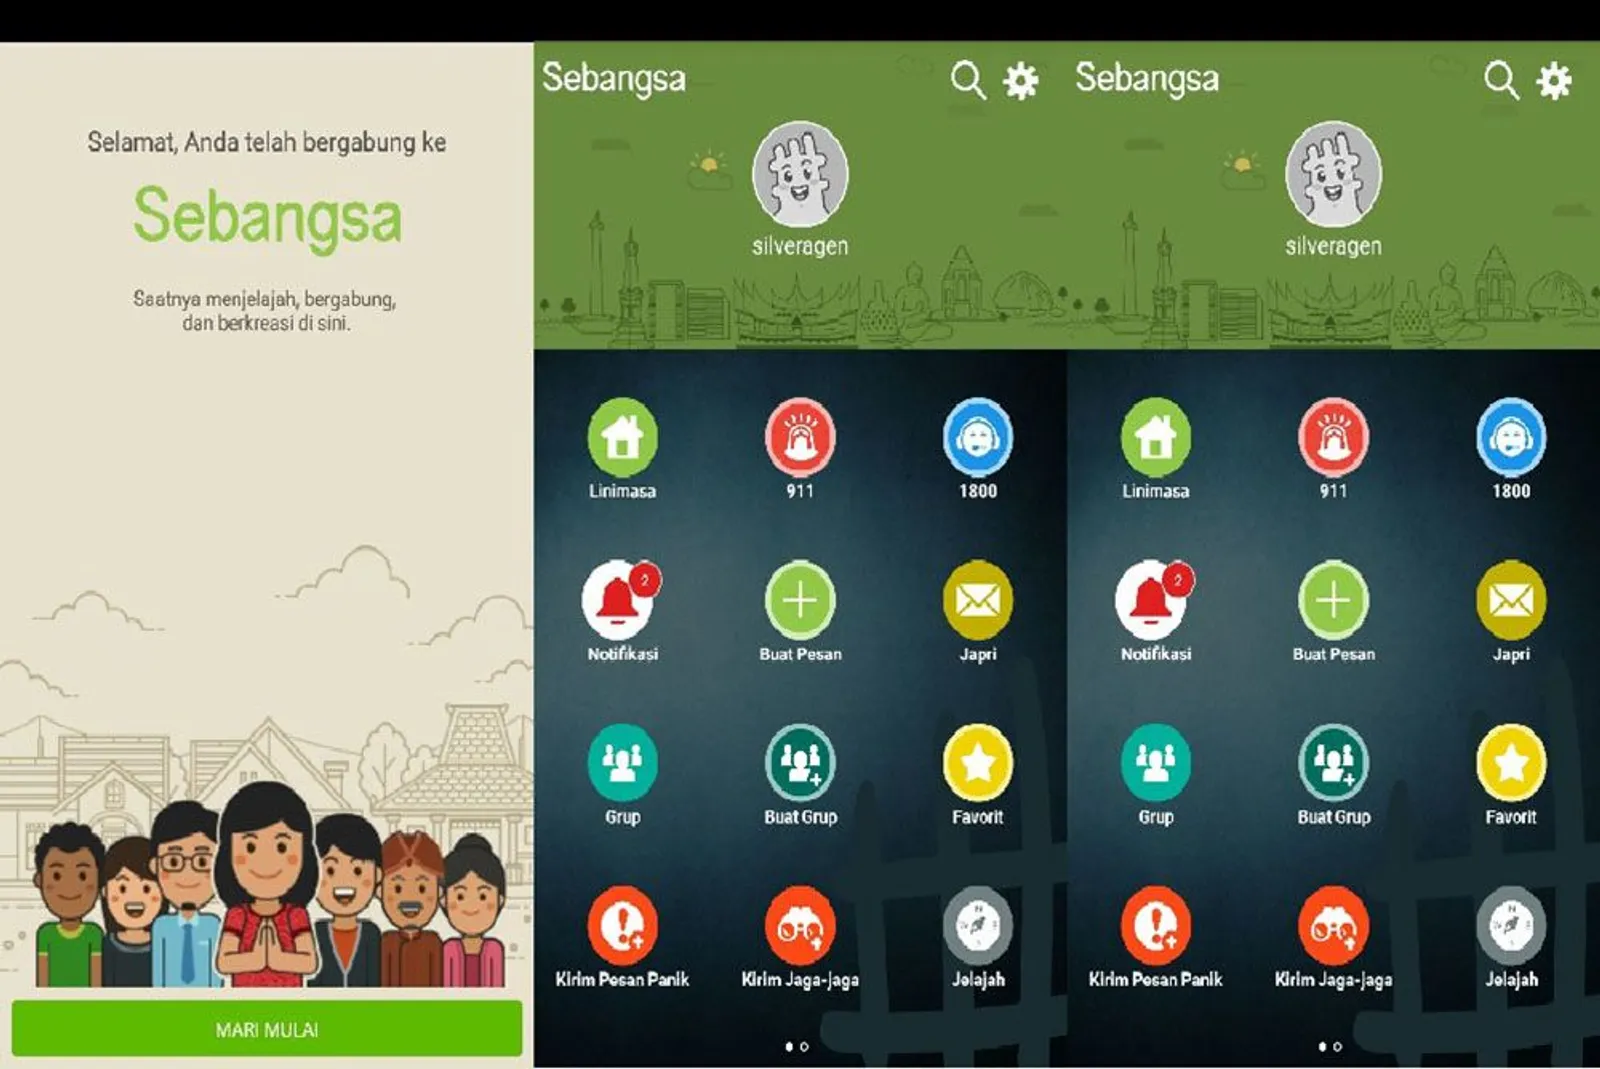 Punya Misi Membantu Sesama, Ini 5 Aplikasi Keren Buatan Indonesia